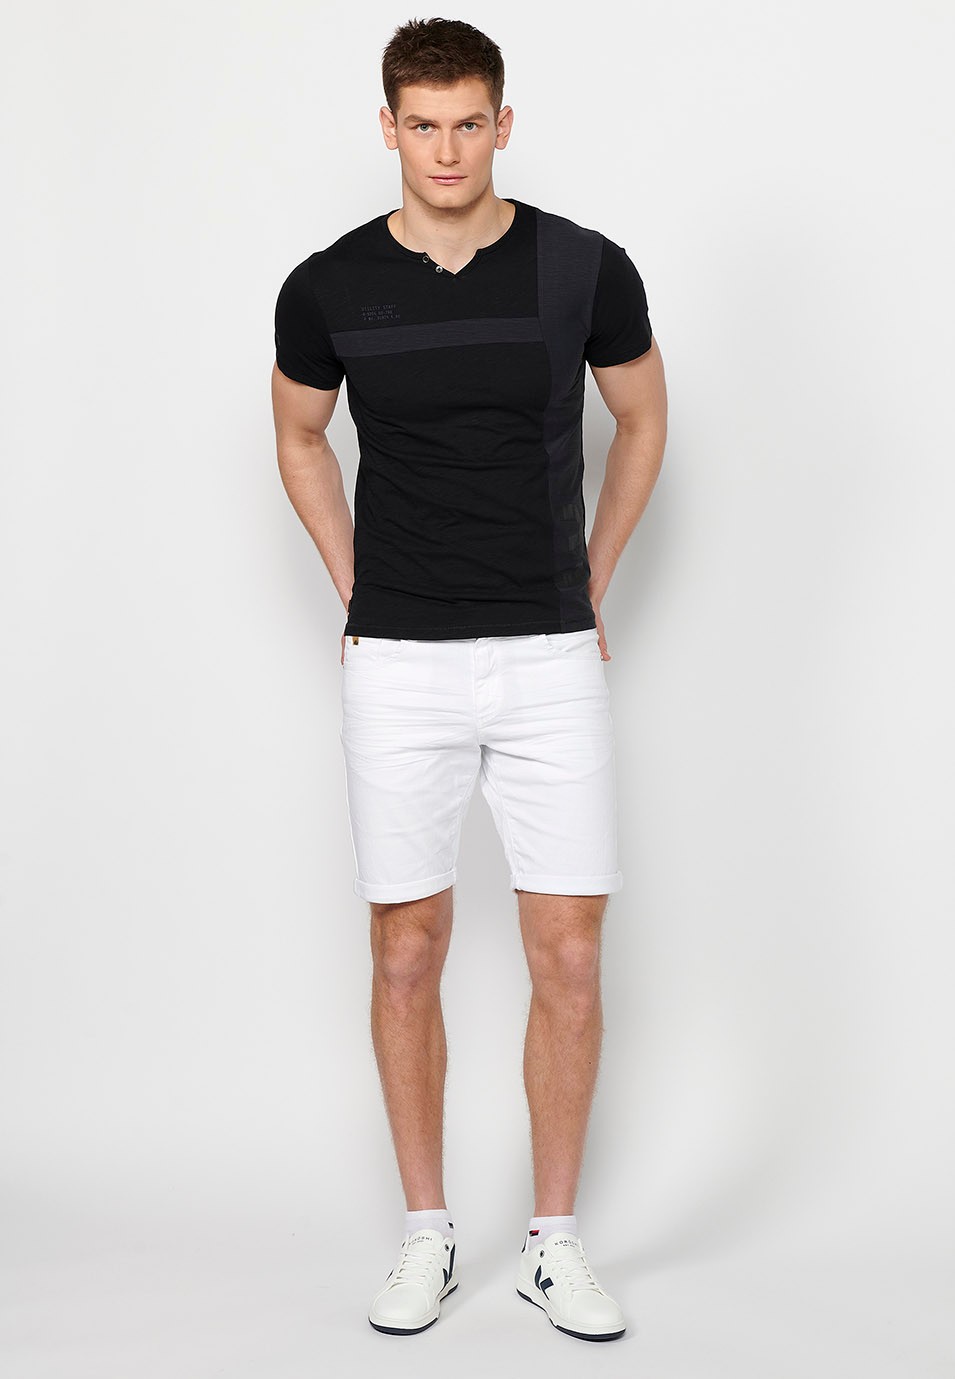 Schwarzes Herren-T-Shirt aus Baumwolle mit kurzen Ärmeln, Rundhalsausschnitt und Knopfleiste